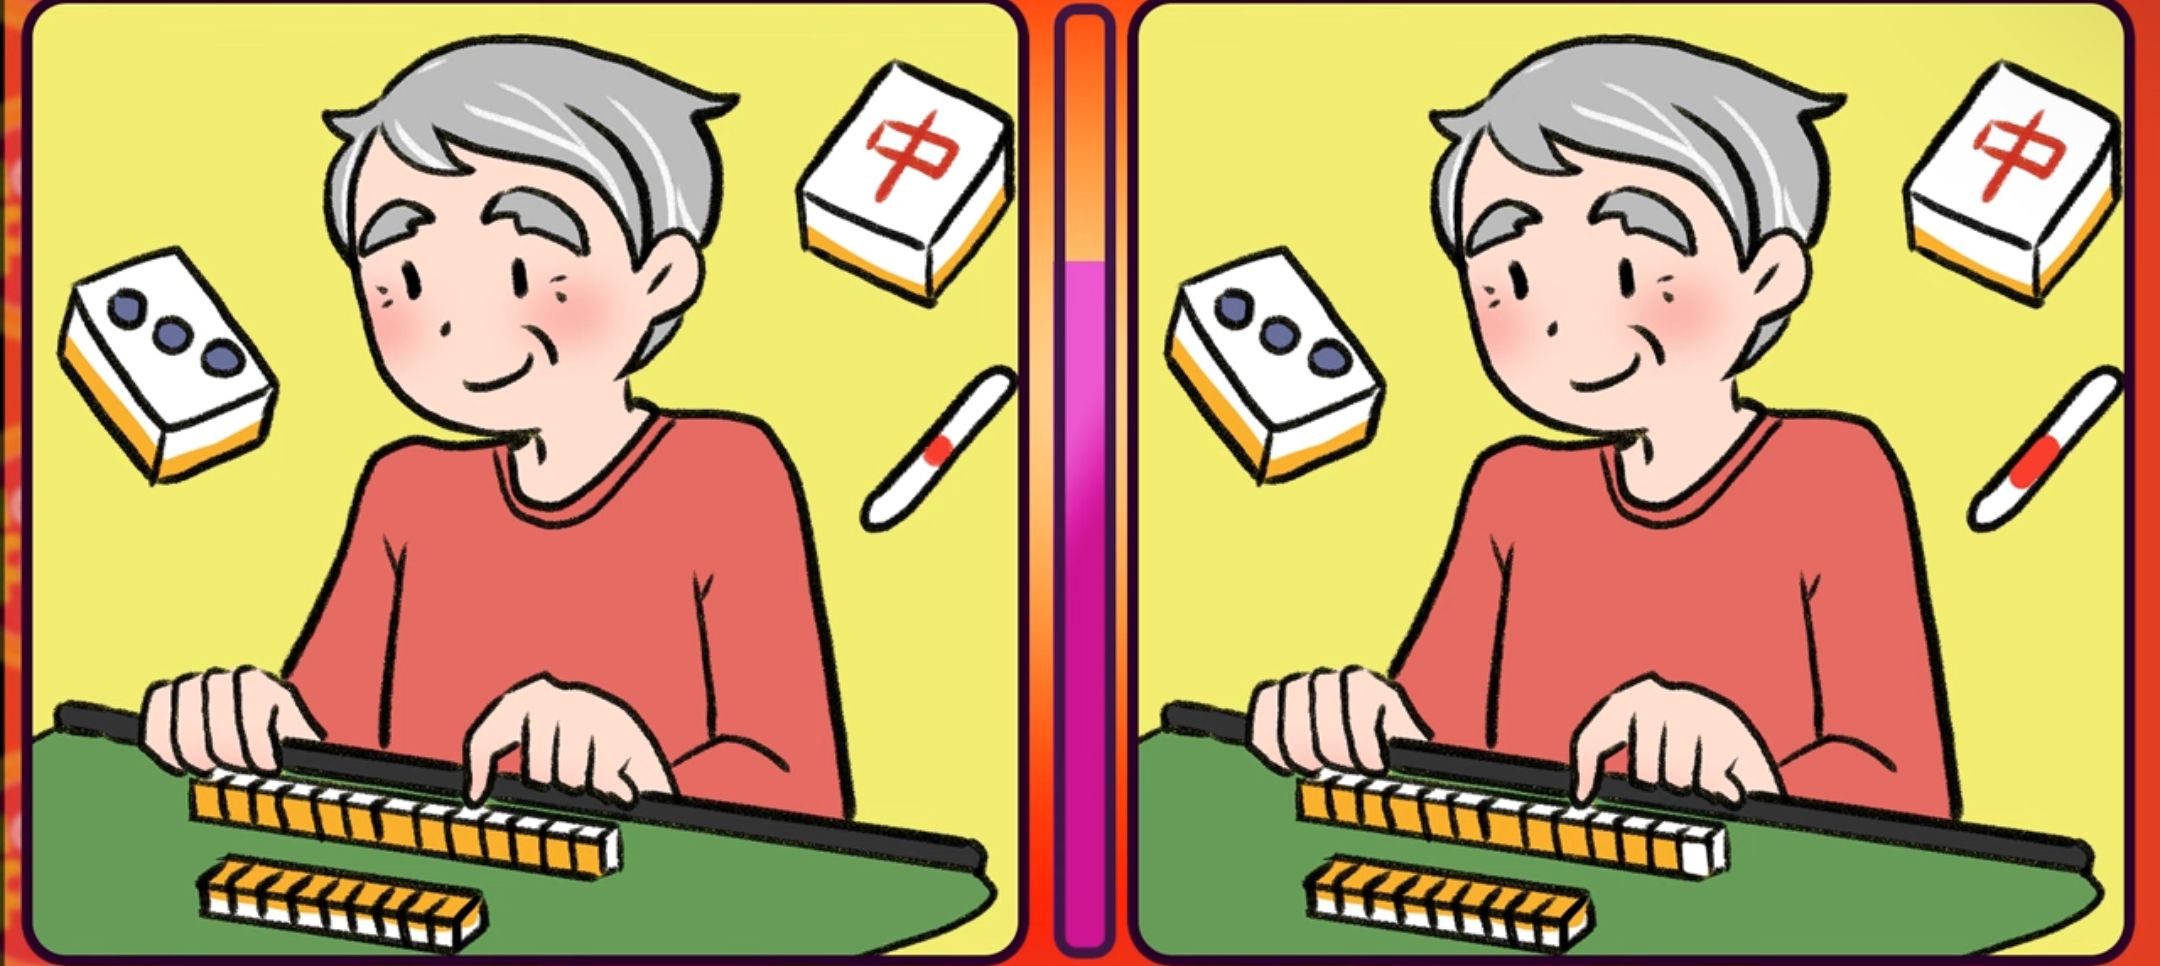 Jangan malu  menunjukkan kemampuan super yang Kamu miliki. Di sini, Kamu  perlu  menemukan perbedaan gambar kakek yang bermain Mahjong.